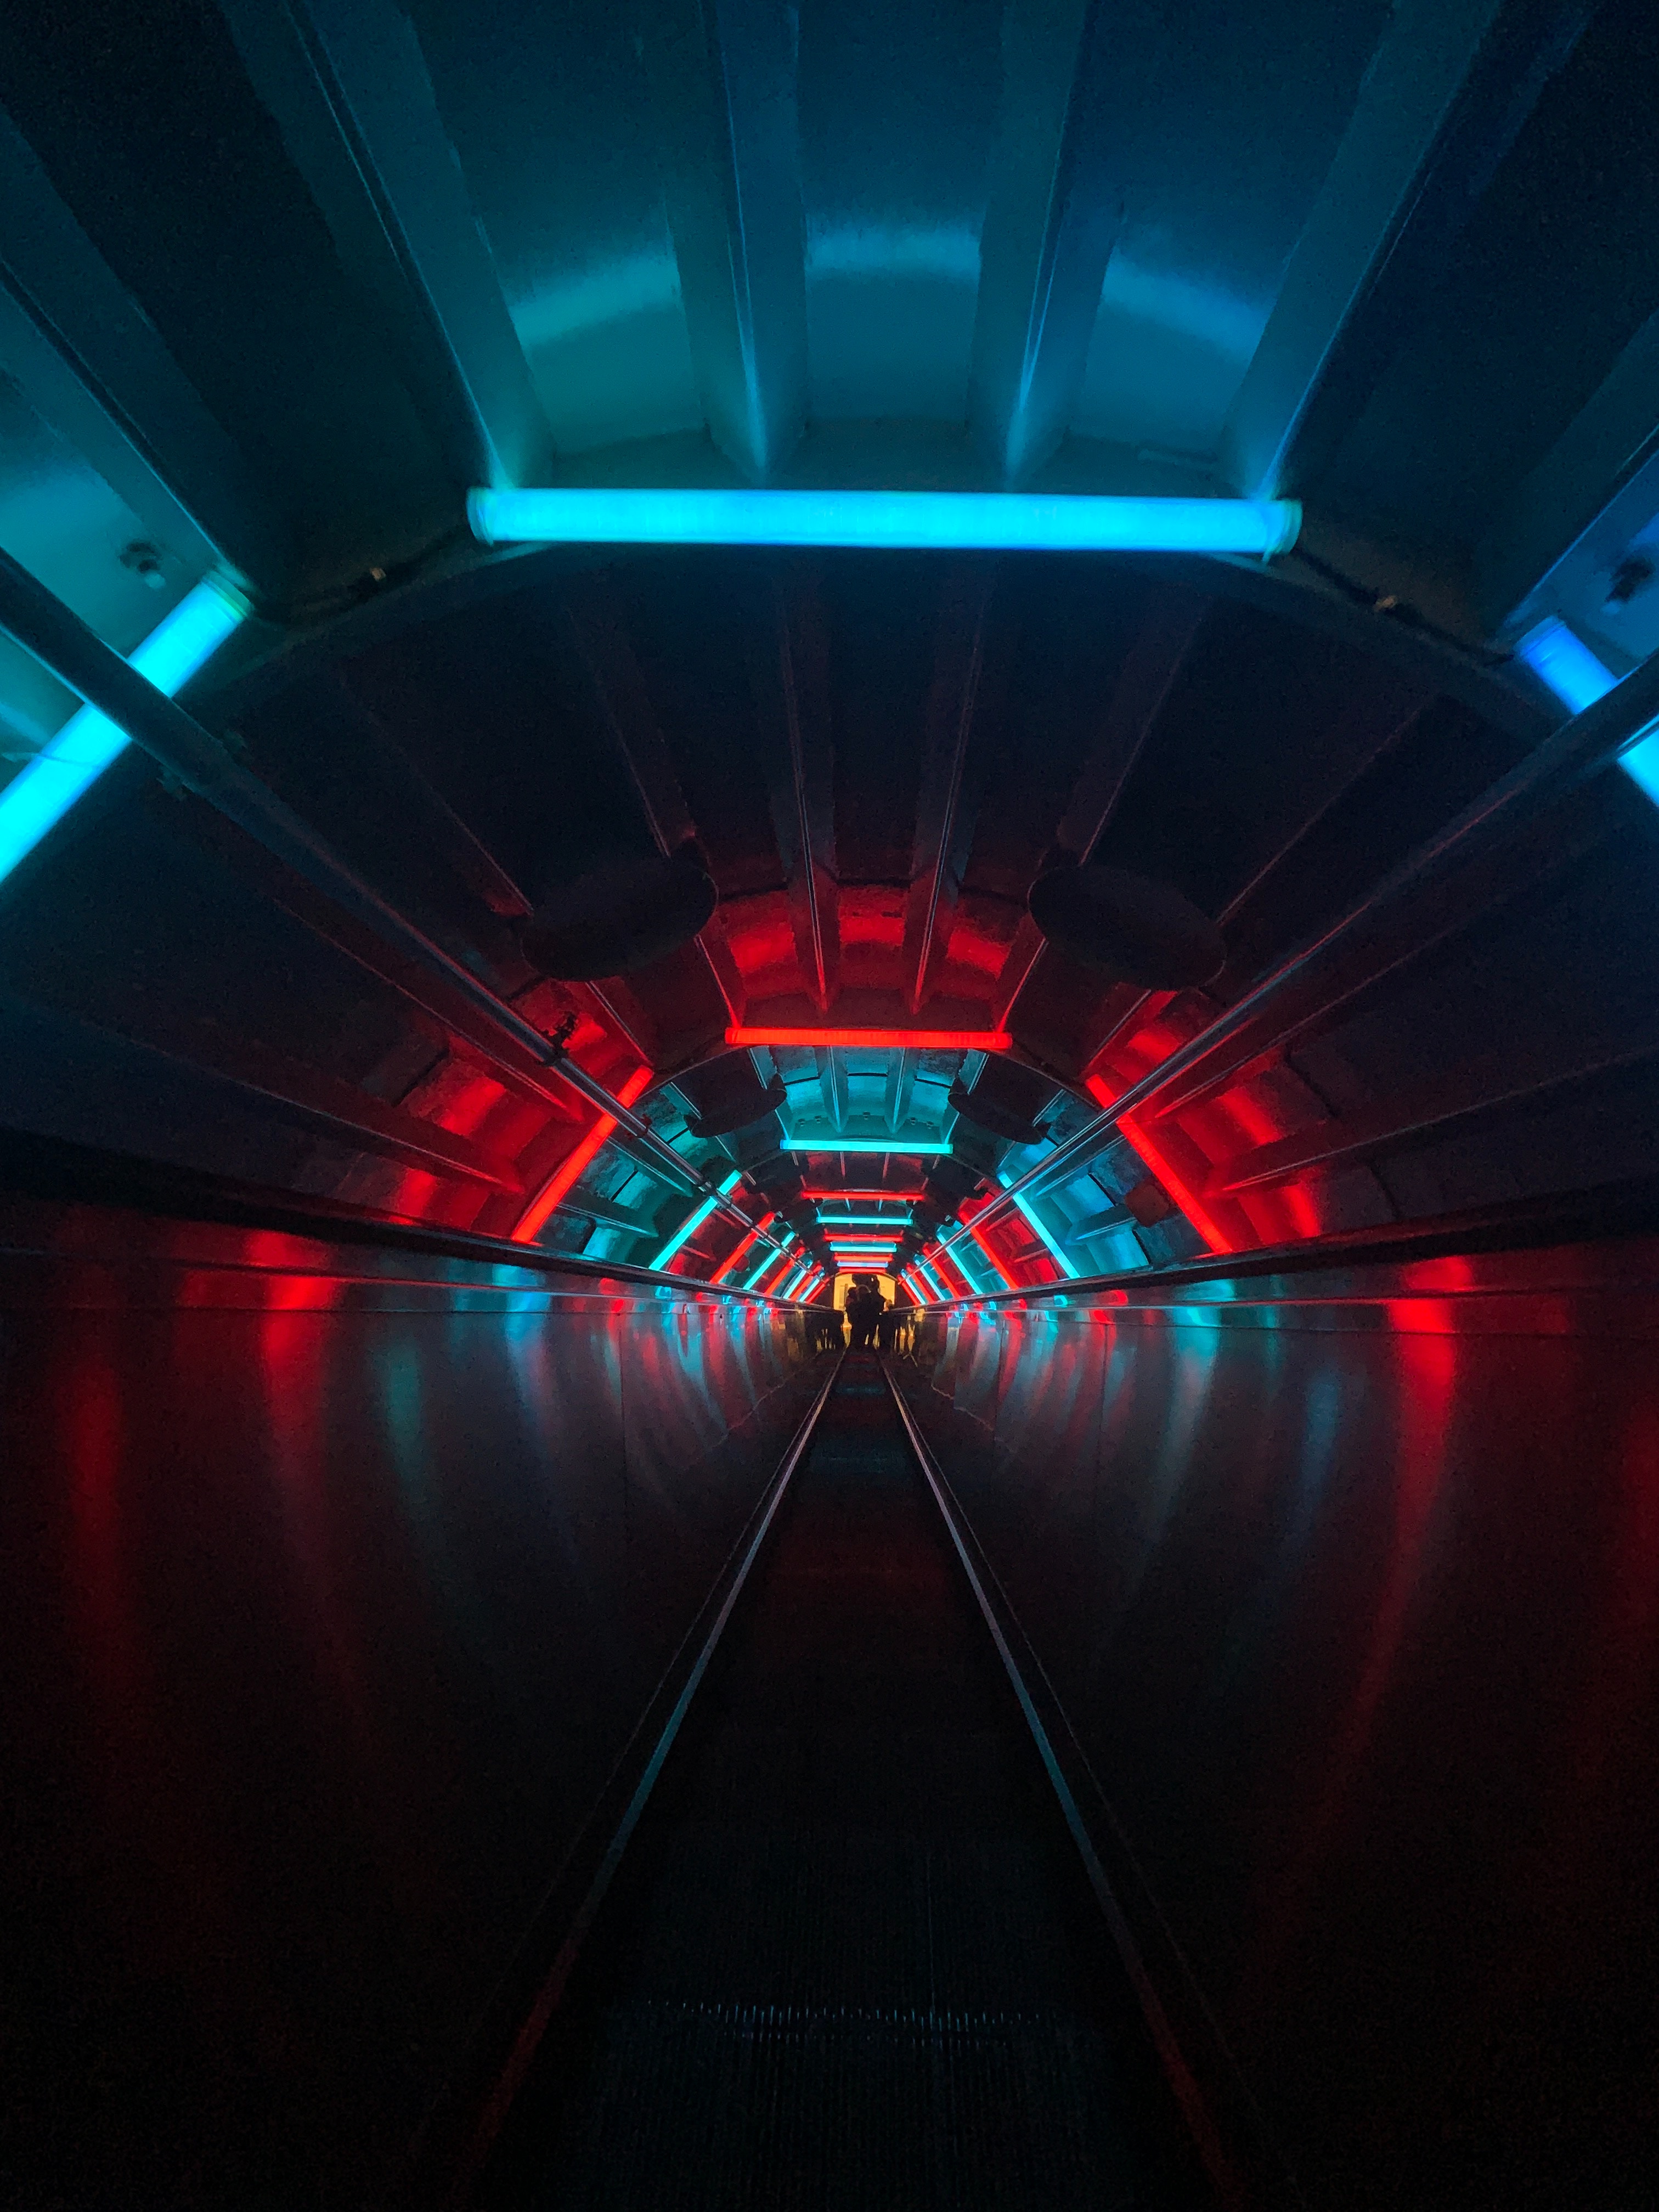 neon, blue, red, dark, tunnel, escalator 2160p